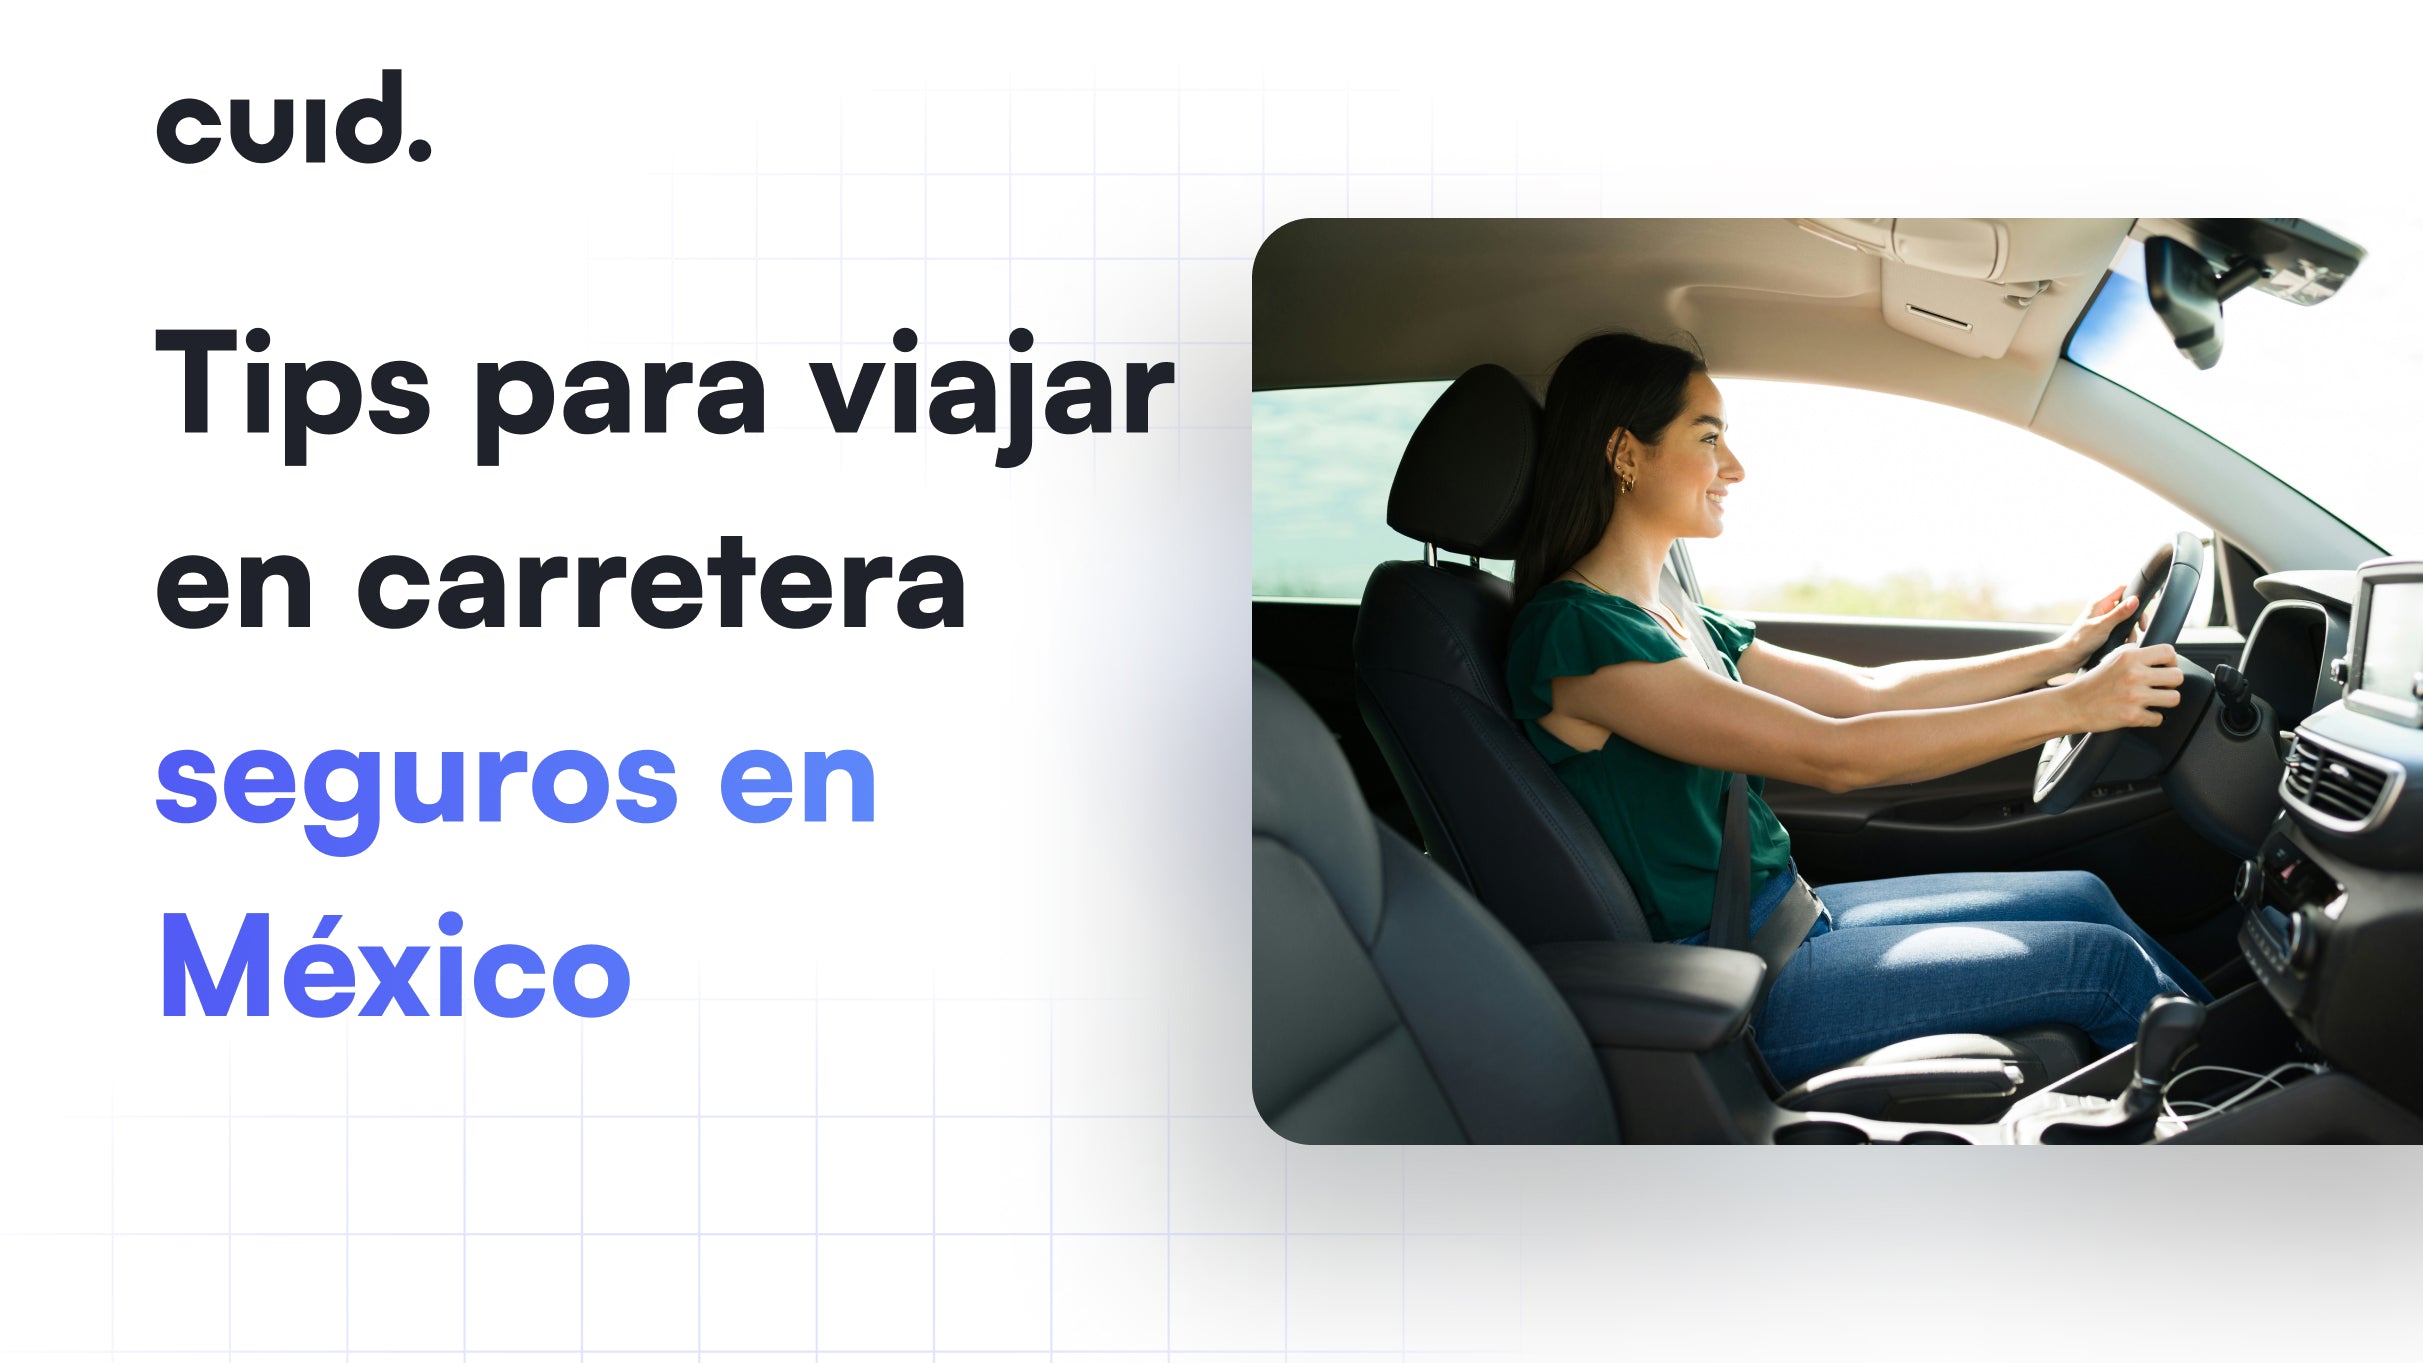 Tips para viajar en carretera seguros en México